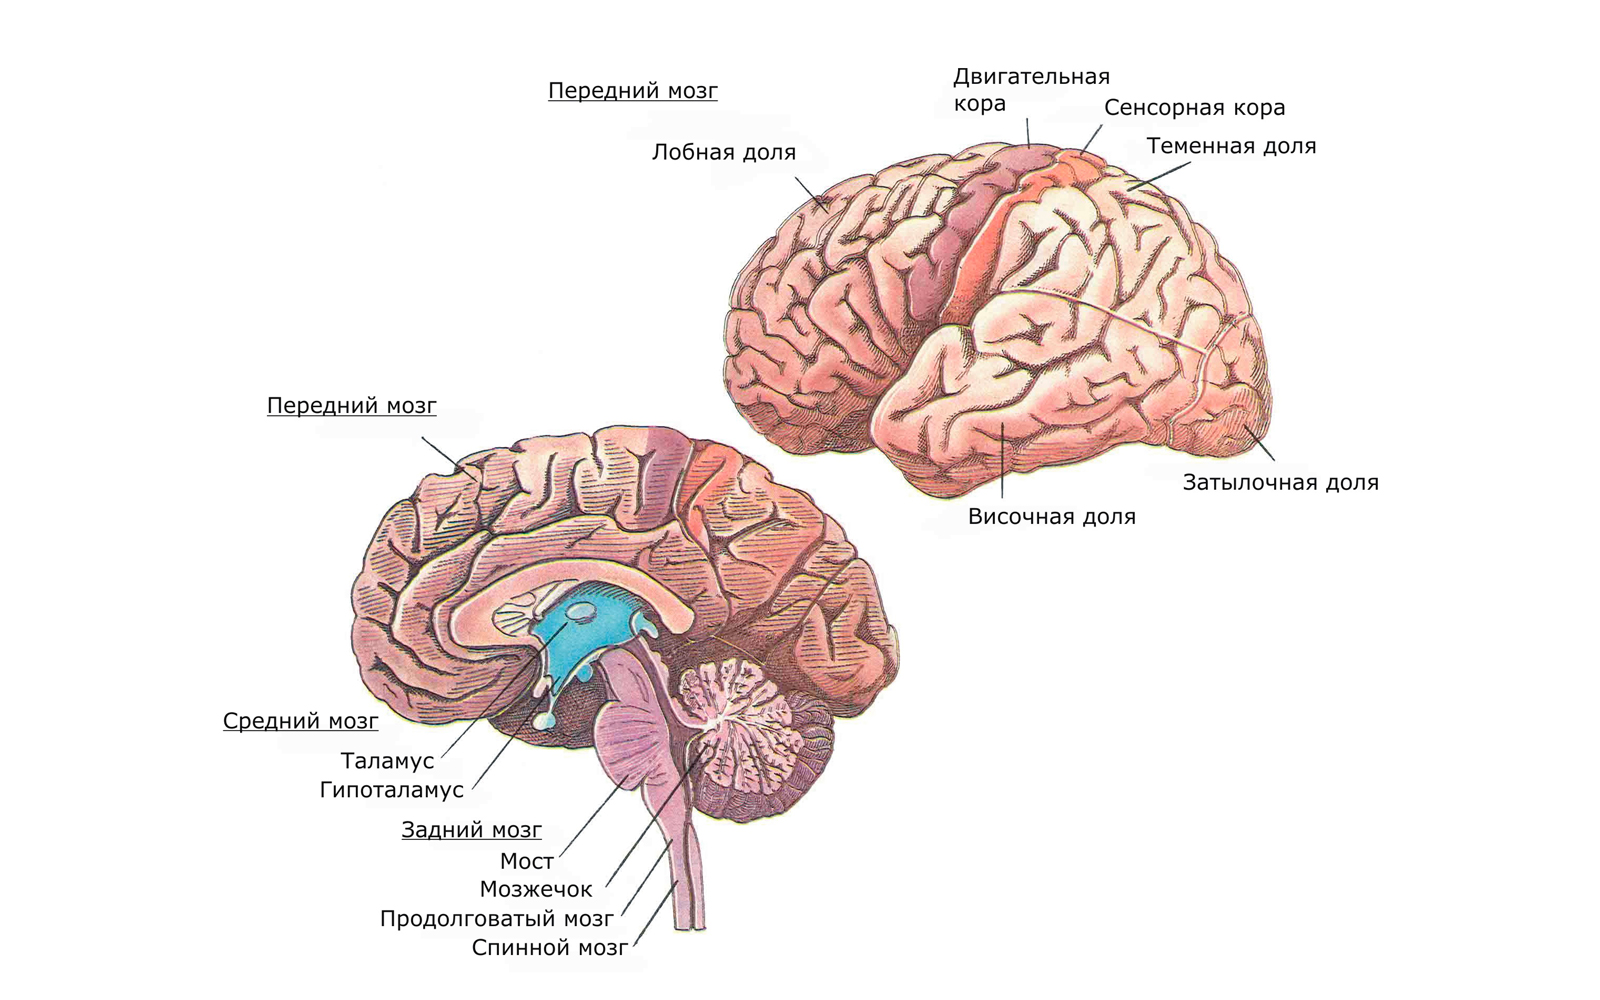 Центральная структура головного мозга